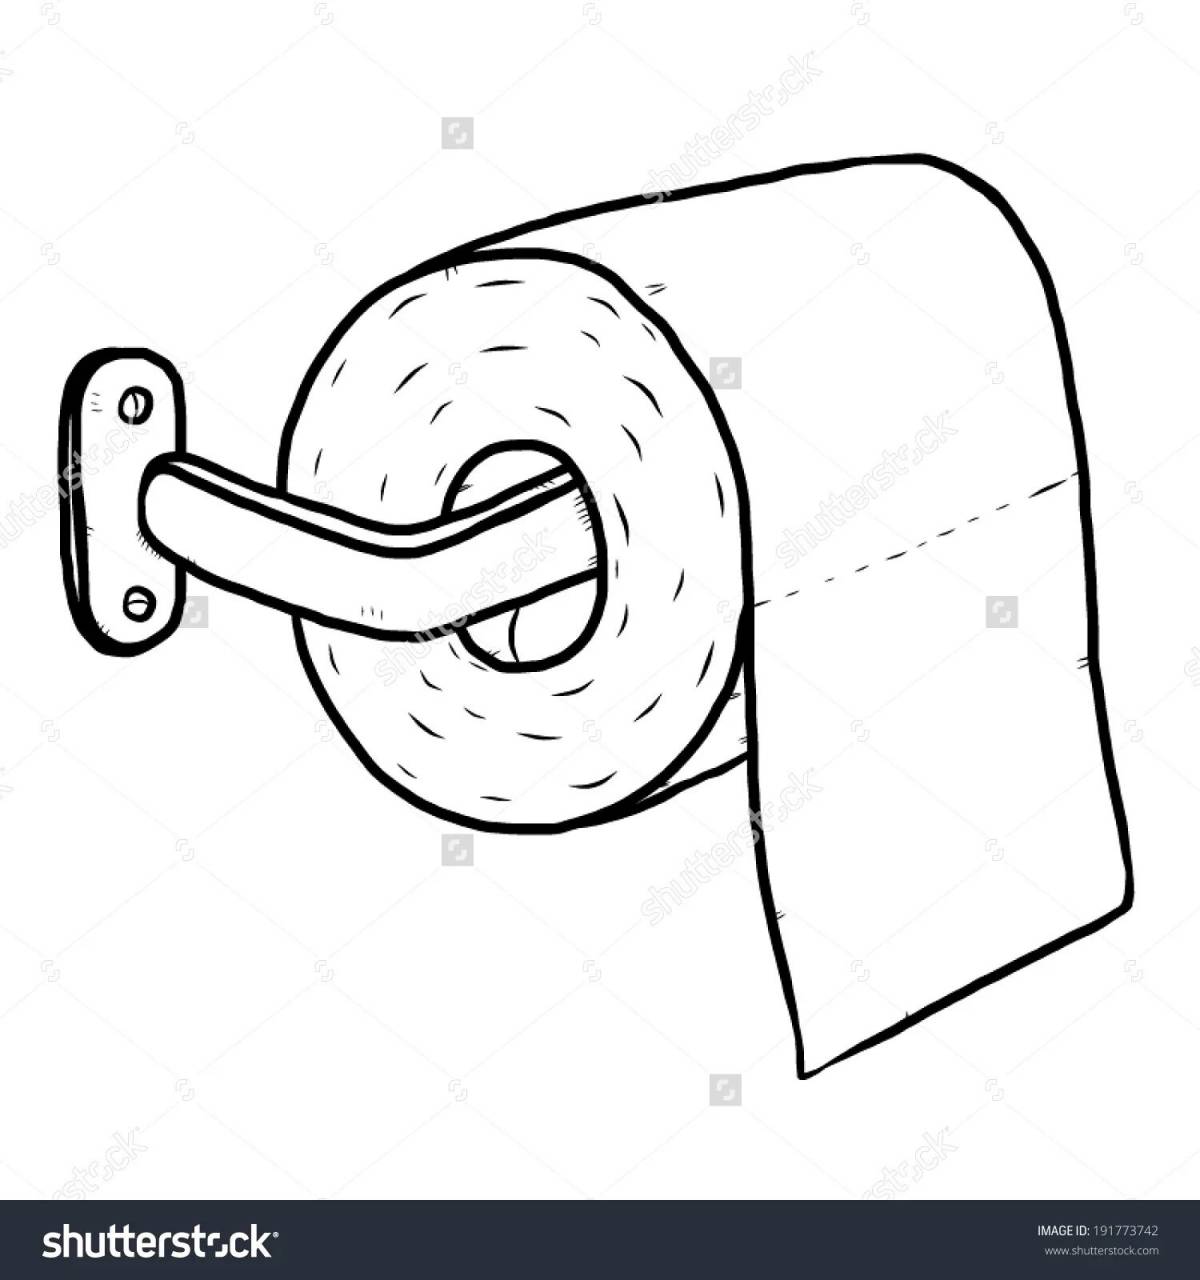 Туалетная бумага